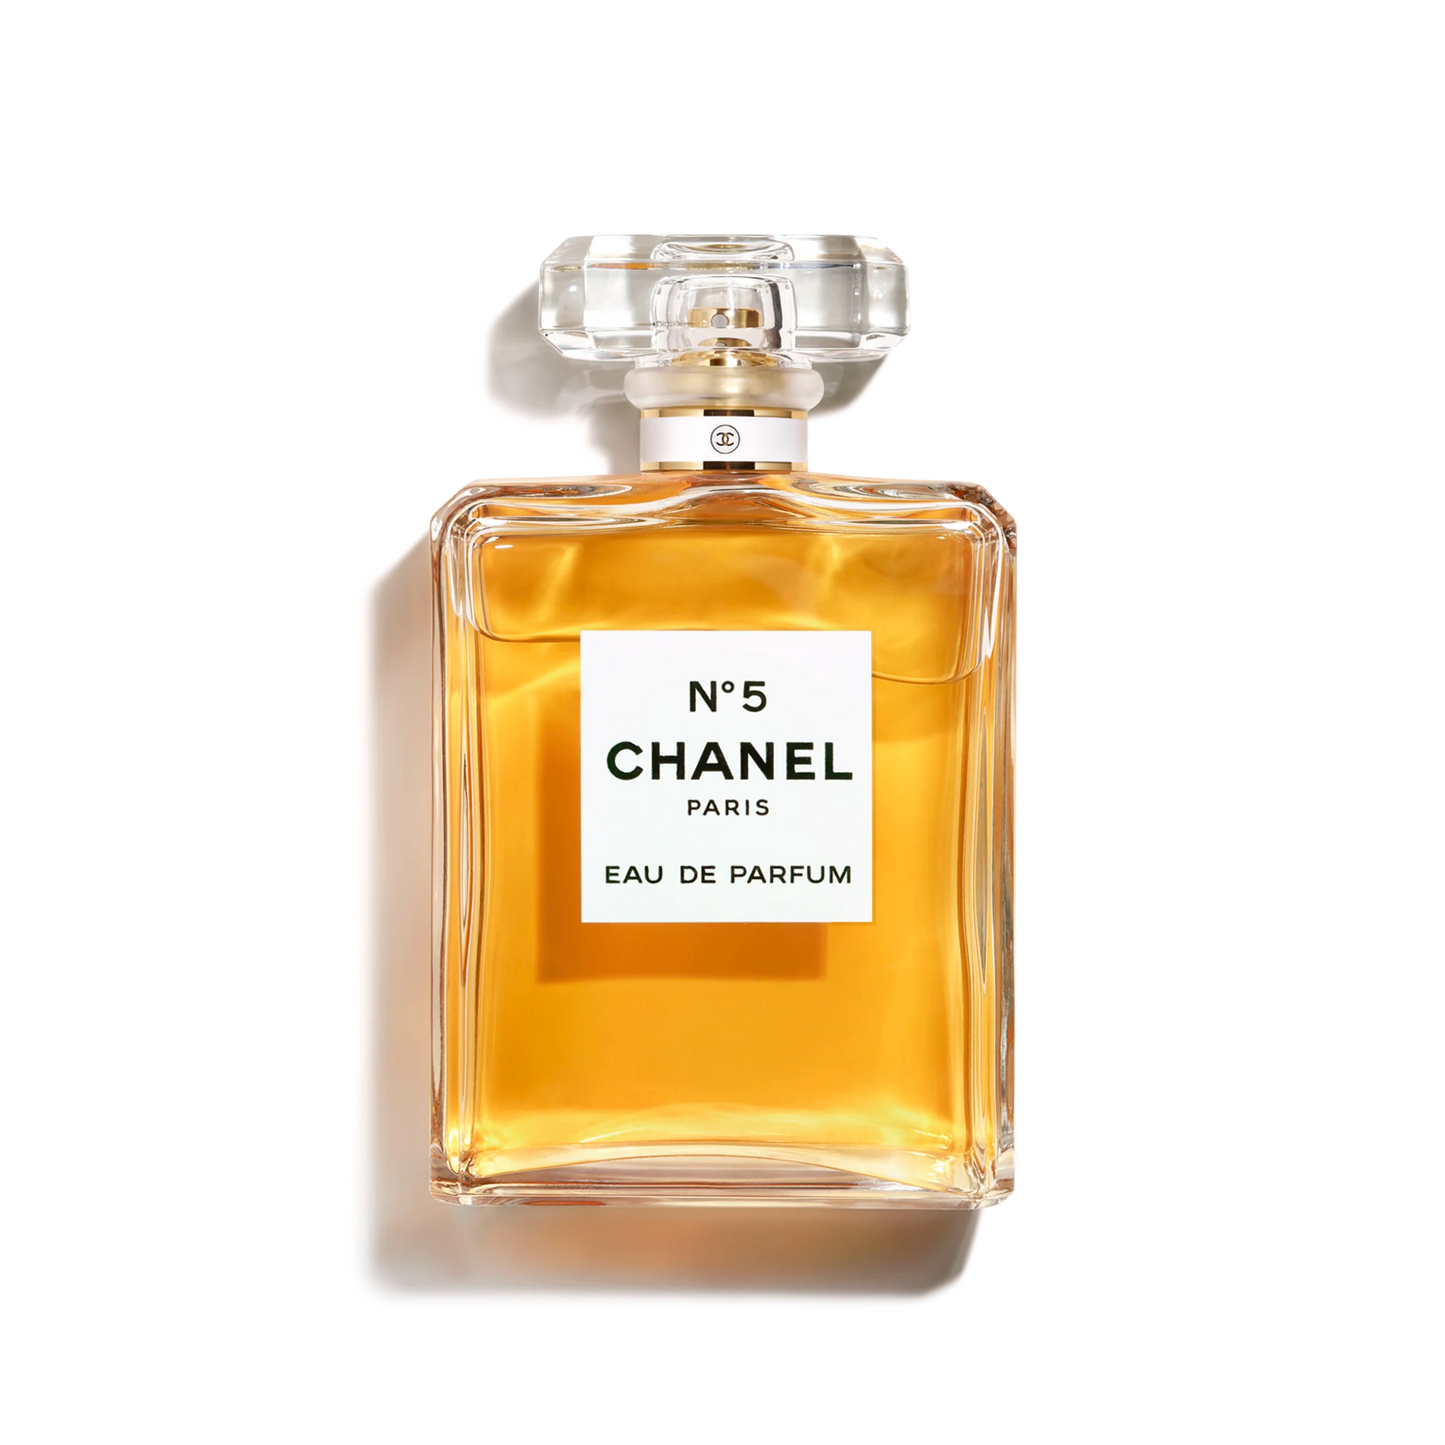 N 5 Chanel